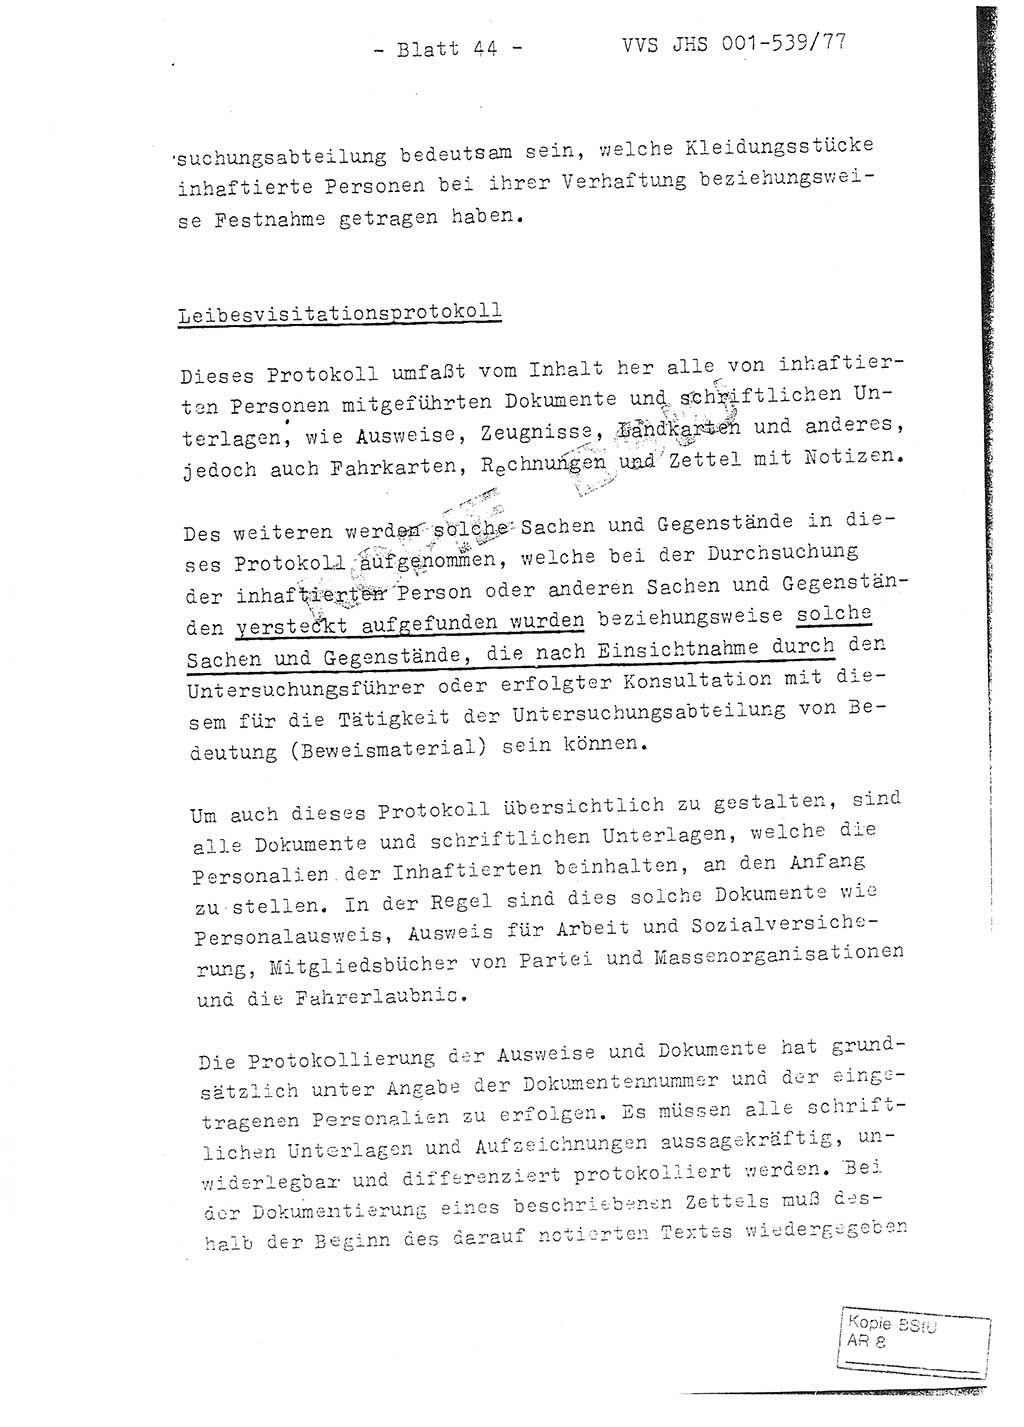 Fachschulabschlußarbeit Hauptmann Dietrich Jung (Abt. ⅩⅣ), Leutnant Klaus Klötzner (Abt. ⅩⅣ), Ministerium für Staatssicherheit (MfS) [Deutsche Demokratische Republik (DDR)], Juristische Hochschule (JHS), Vertrauliche Verschlußsache (VVS) 001-539/77, Potsdam 1978, Seite 44 (FS-Abschl.-Arb. MfS DDR JHS VVS 001-539/77 1978, S. 44)